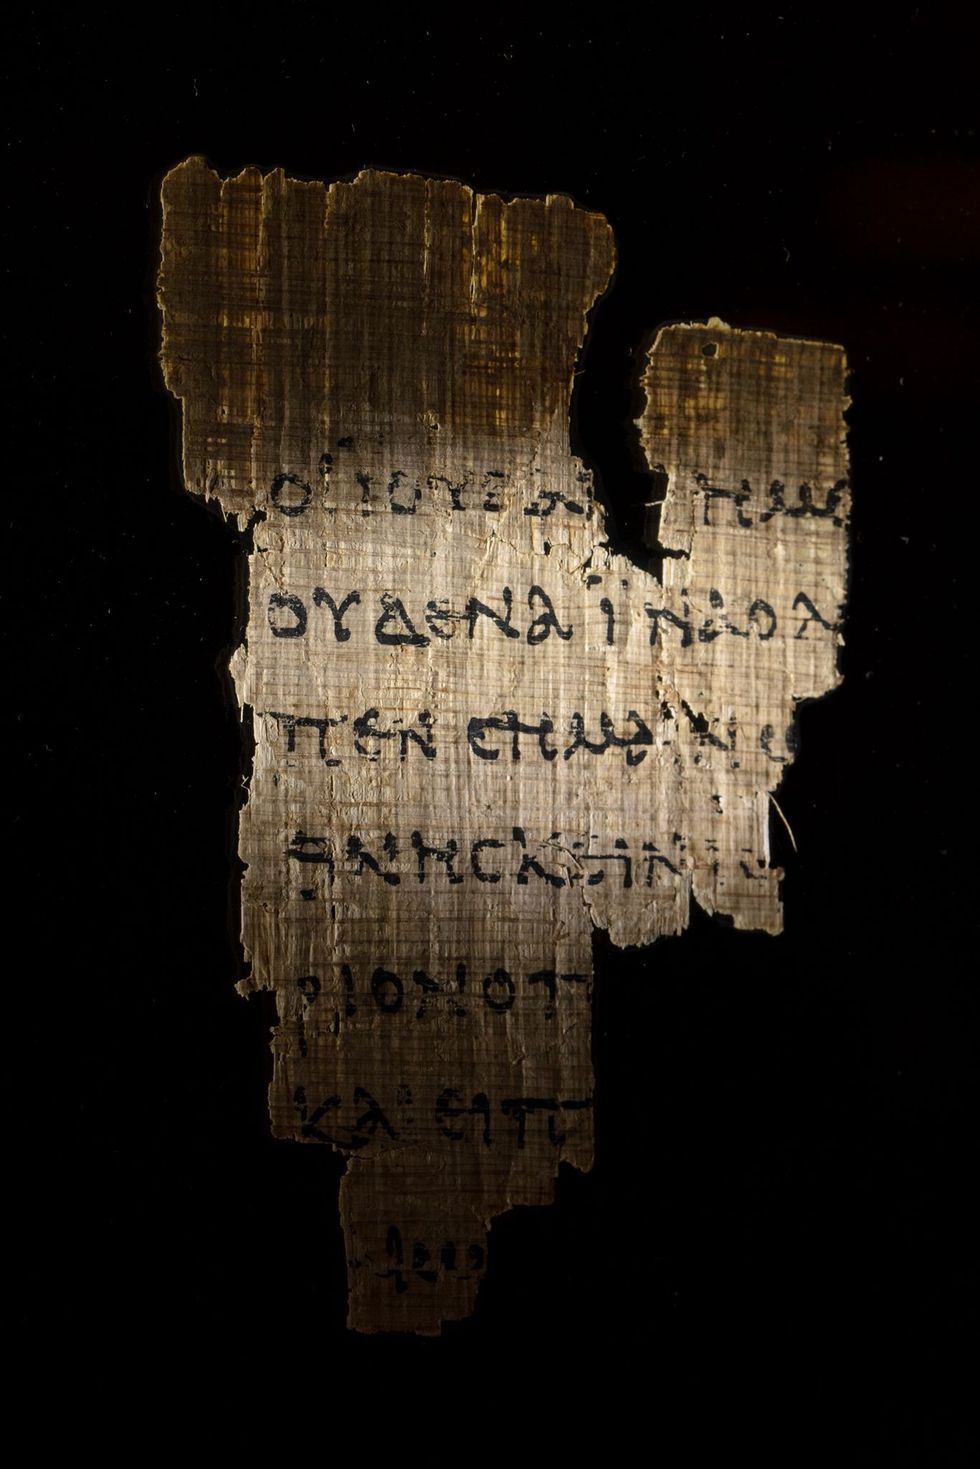 Dit stukje papyrus in de 2de eeuw n Chr in Egypte beschreven is een van de oudst bewaard gebleven teksten uit het Nieuwe Testament Op elke kant staan slechts een paar regels in het Grieks uit hoofdstuk 18 van het evangelie volgens Johannes